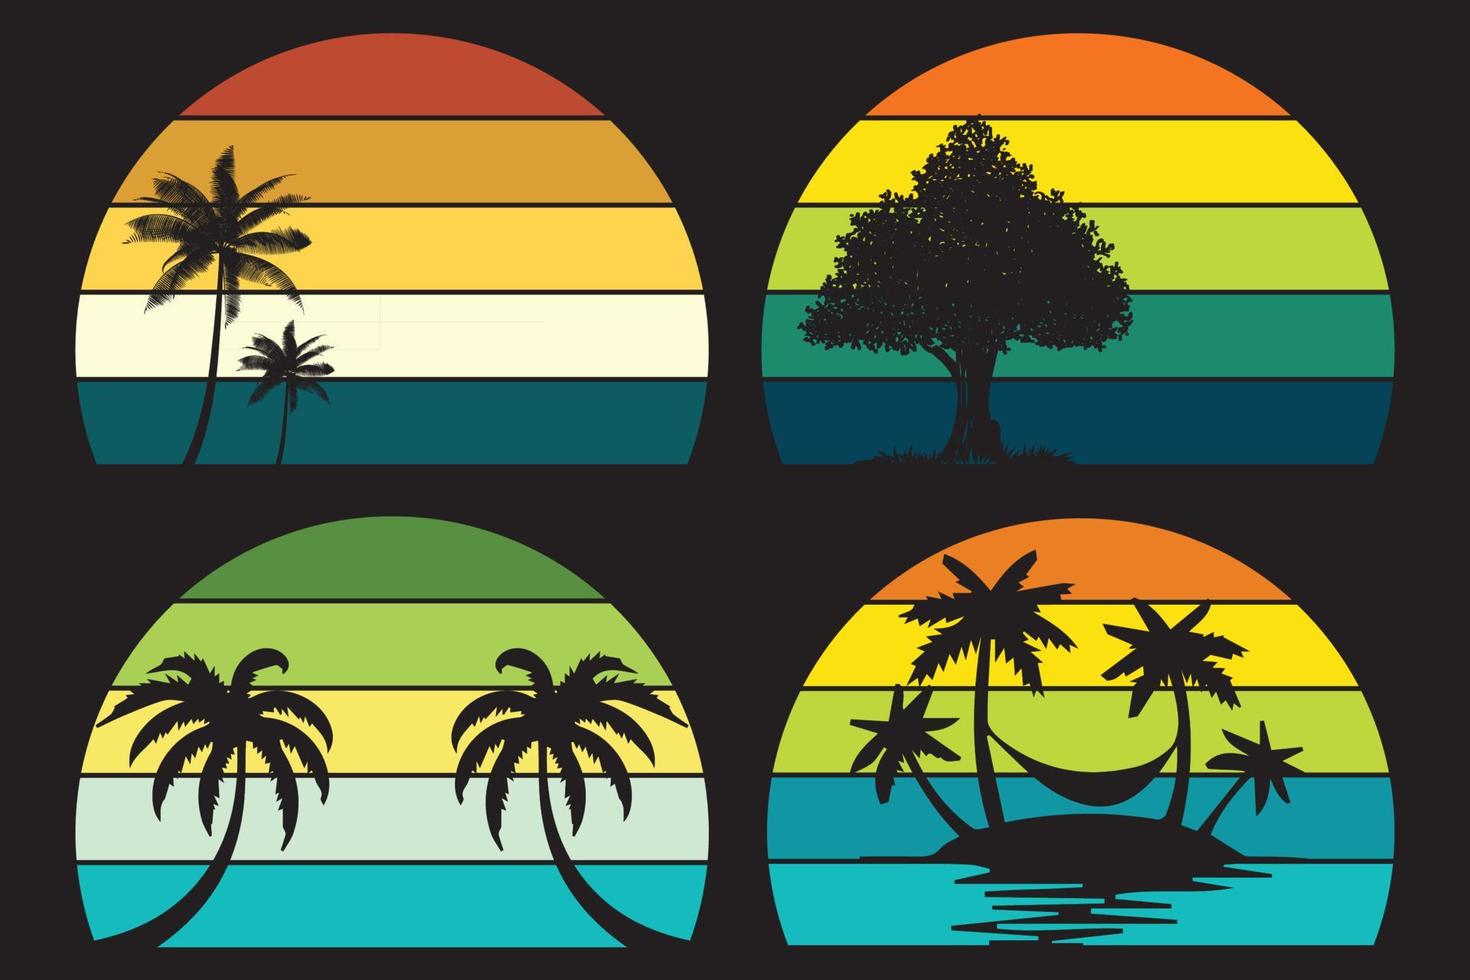 collection coucher de soleil rétro style années 80. formes colorées rayées avec des palmiers tropicaux et des cactus, vecteur vecteur libre